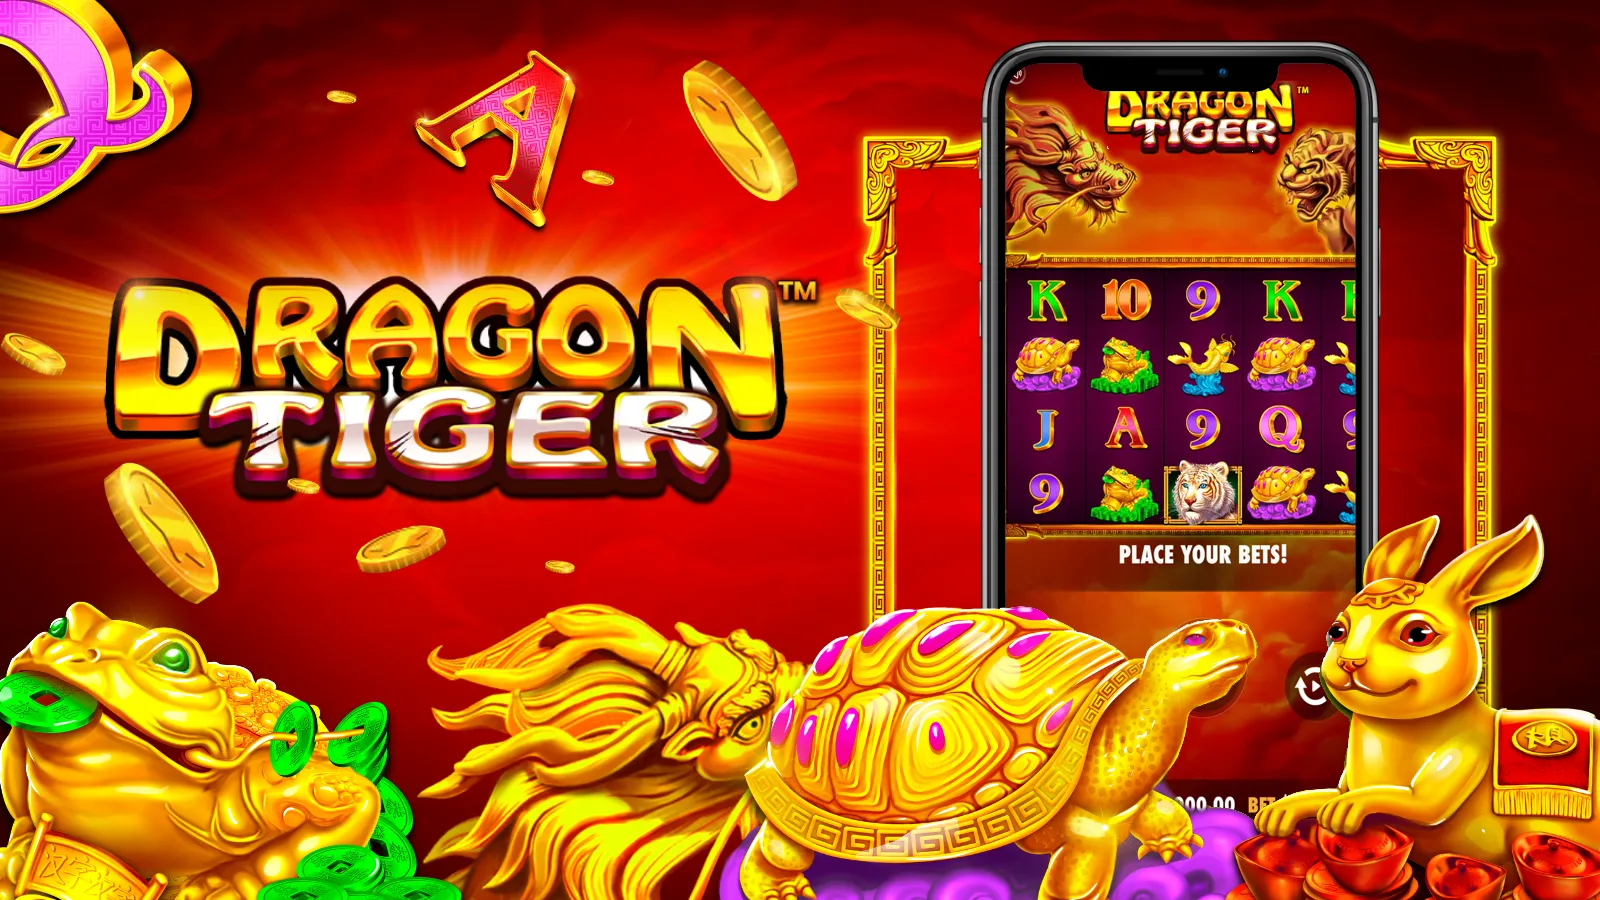 Tiger vs Dragon game